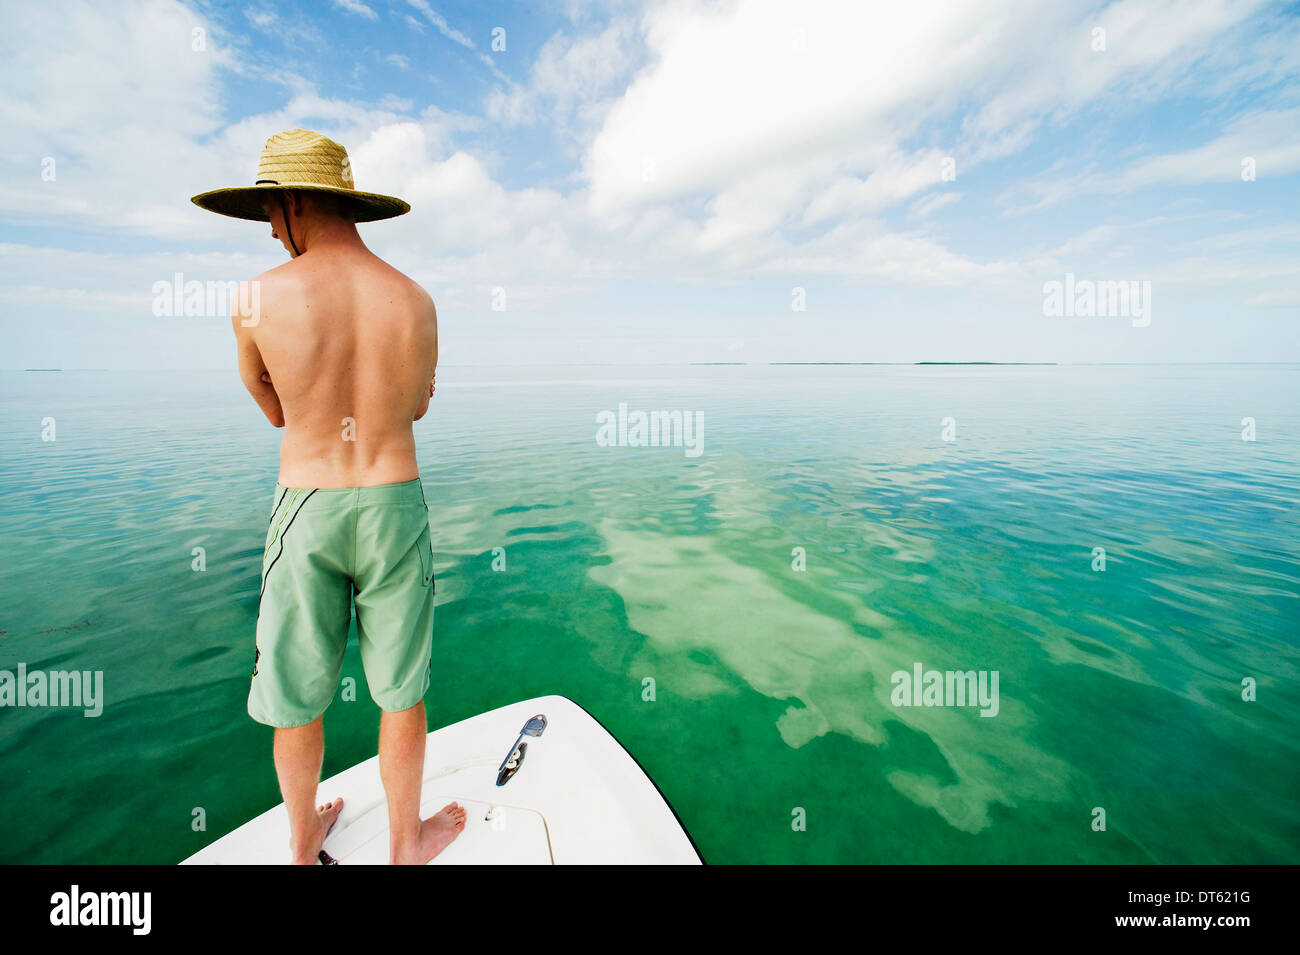 Young man standing on boat, Islamorada, Florida Keys, USA Stock Photo